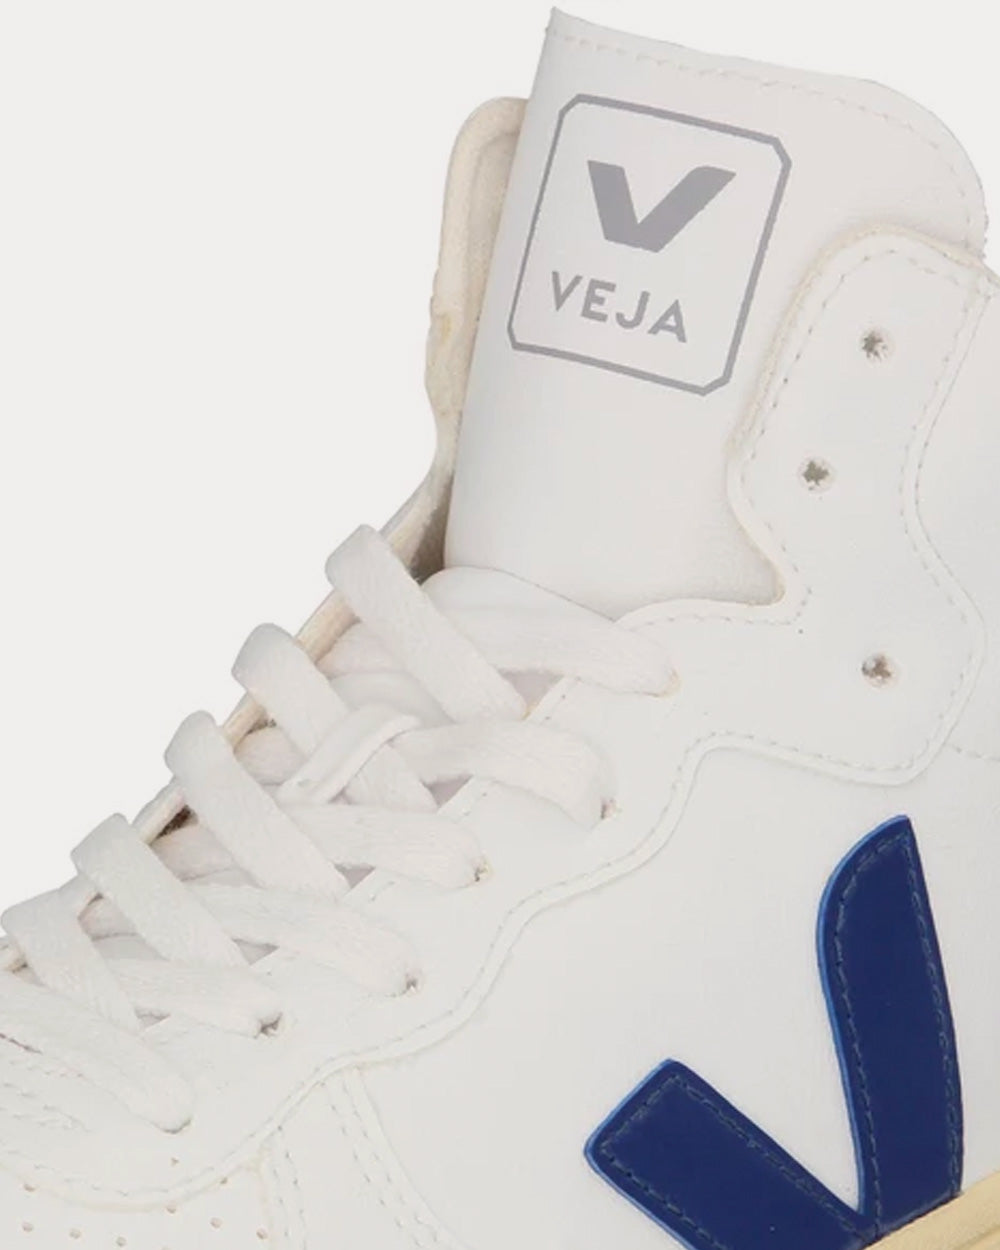 Veja - V-15 CWL White / Cobalt / Butter Sole High Top Sneakers